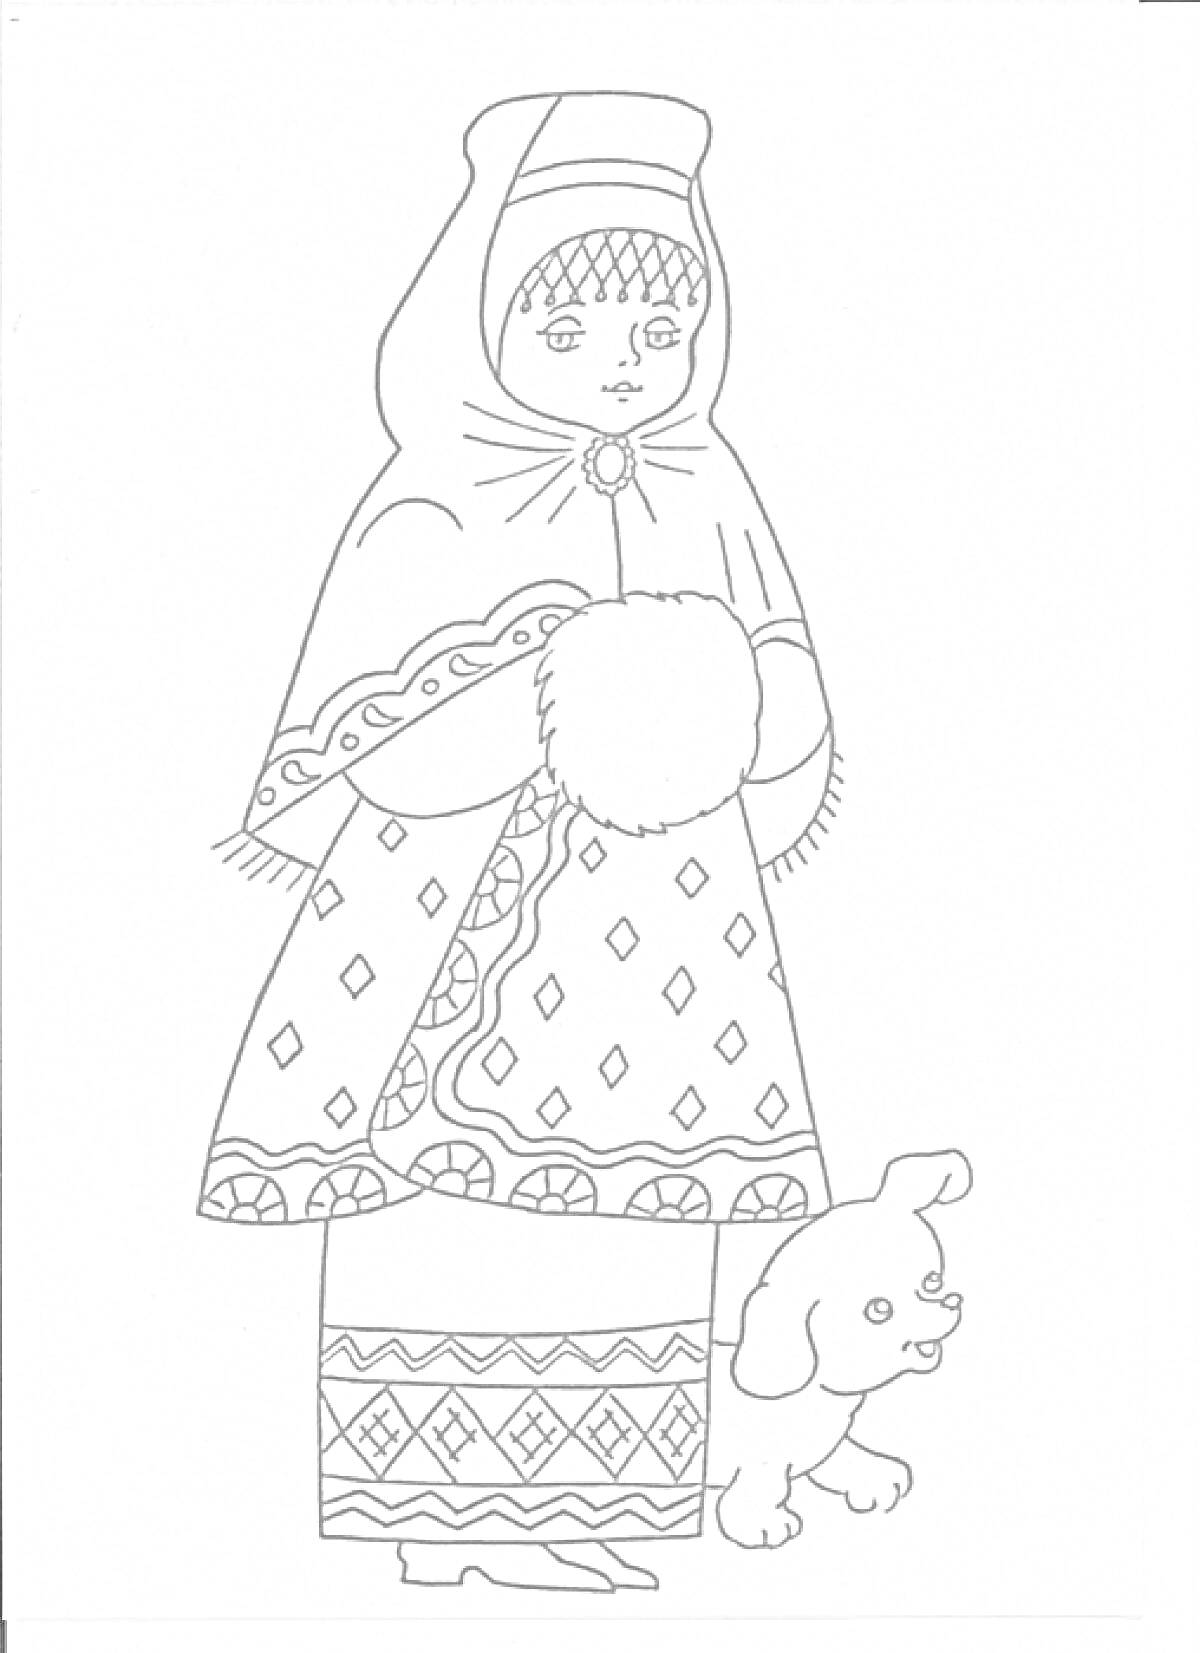 Русский народный костюм с меховой муфтой и собачкой